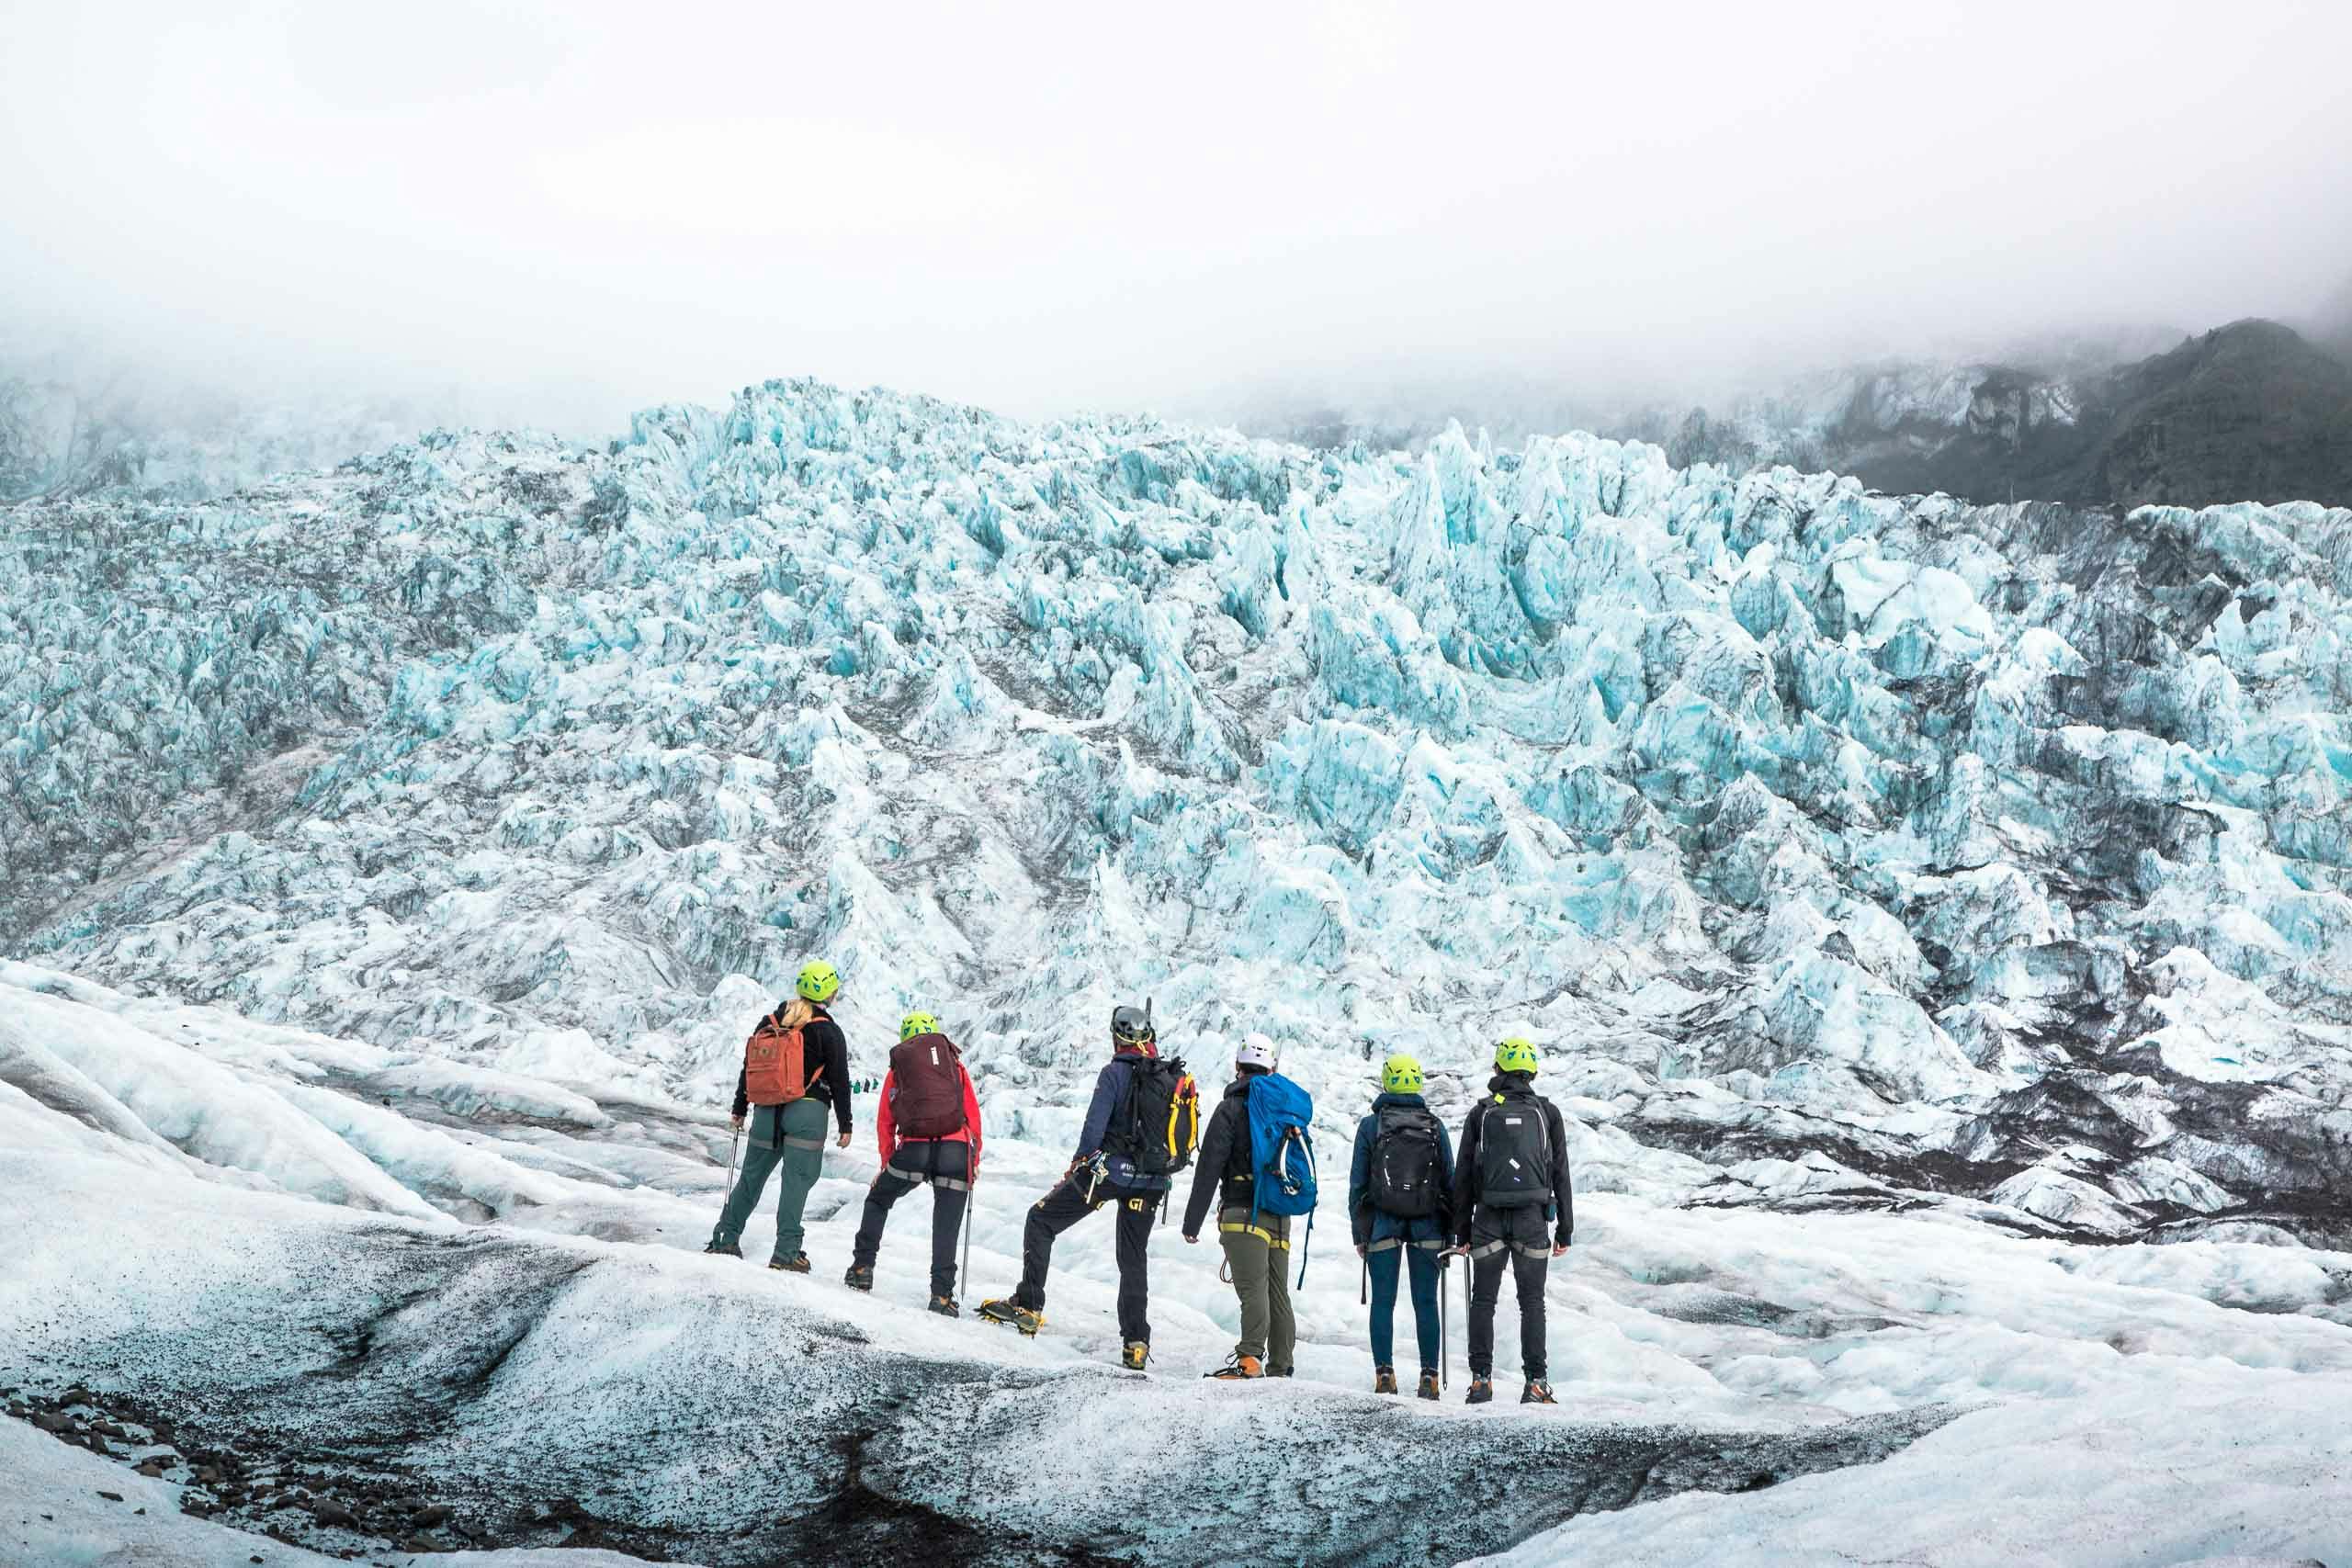 アイスランドの観光の目玉、ヨークルスアゥルロゥン氷河湖の絶景に魅了される